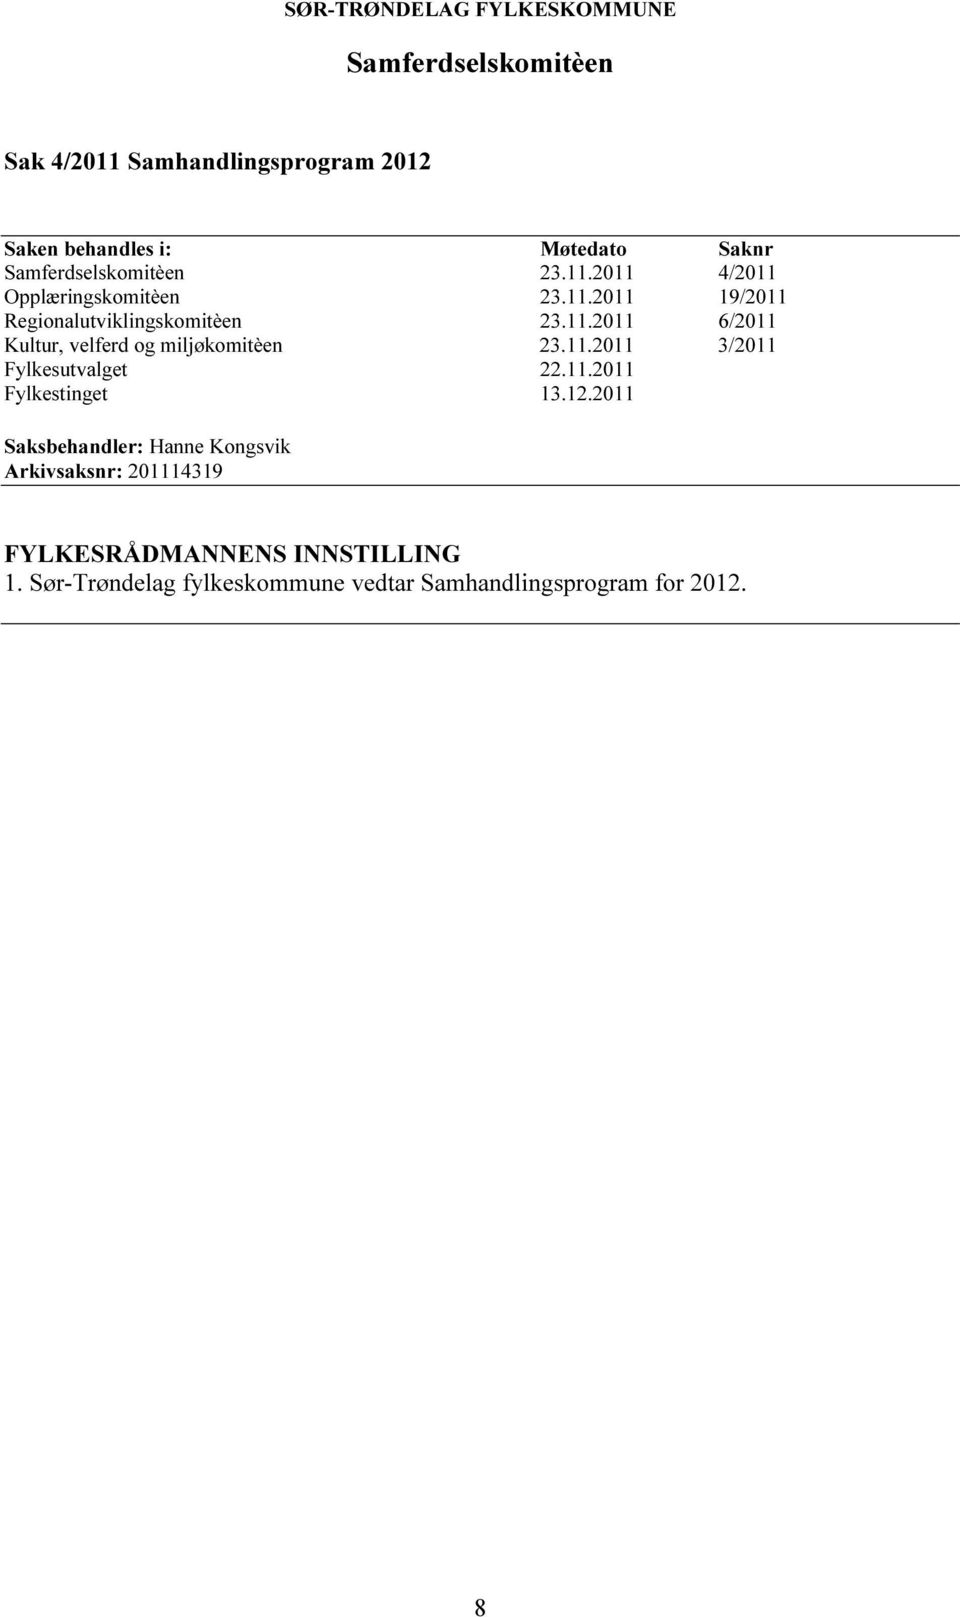 11.2011 3/2011 Fylkesutvalget 22.11.2011 Fylkestinget 13.12.